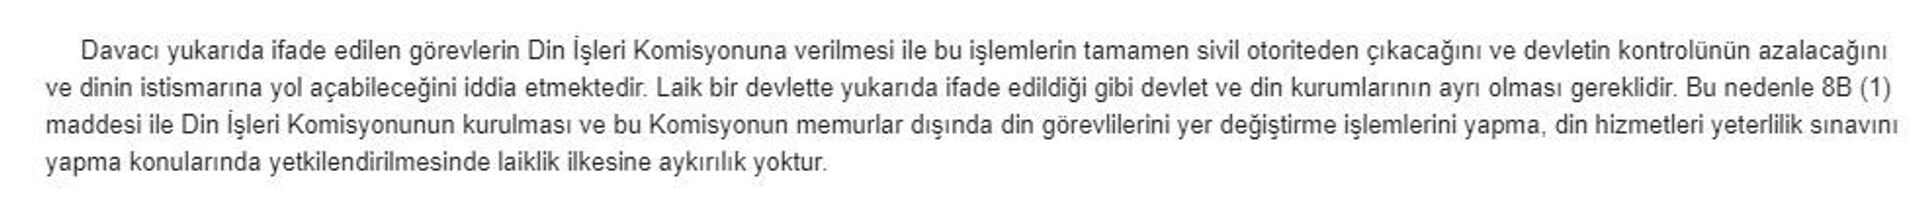 Kuzey Kıbrıs’taki Kur'an kursu kararı için hedefteki sendika başkanından ilginç savunma  - Sputnik Türkiye, 1920, 16.04.2021